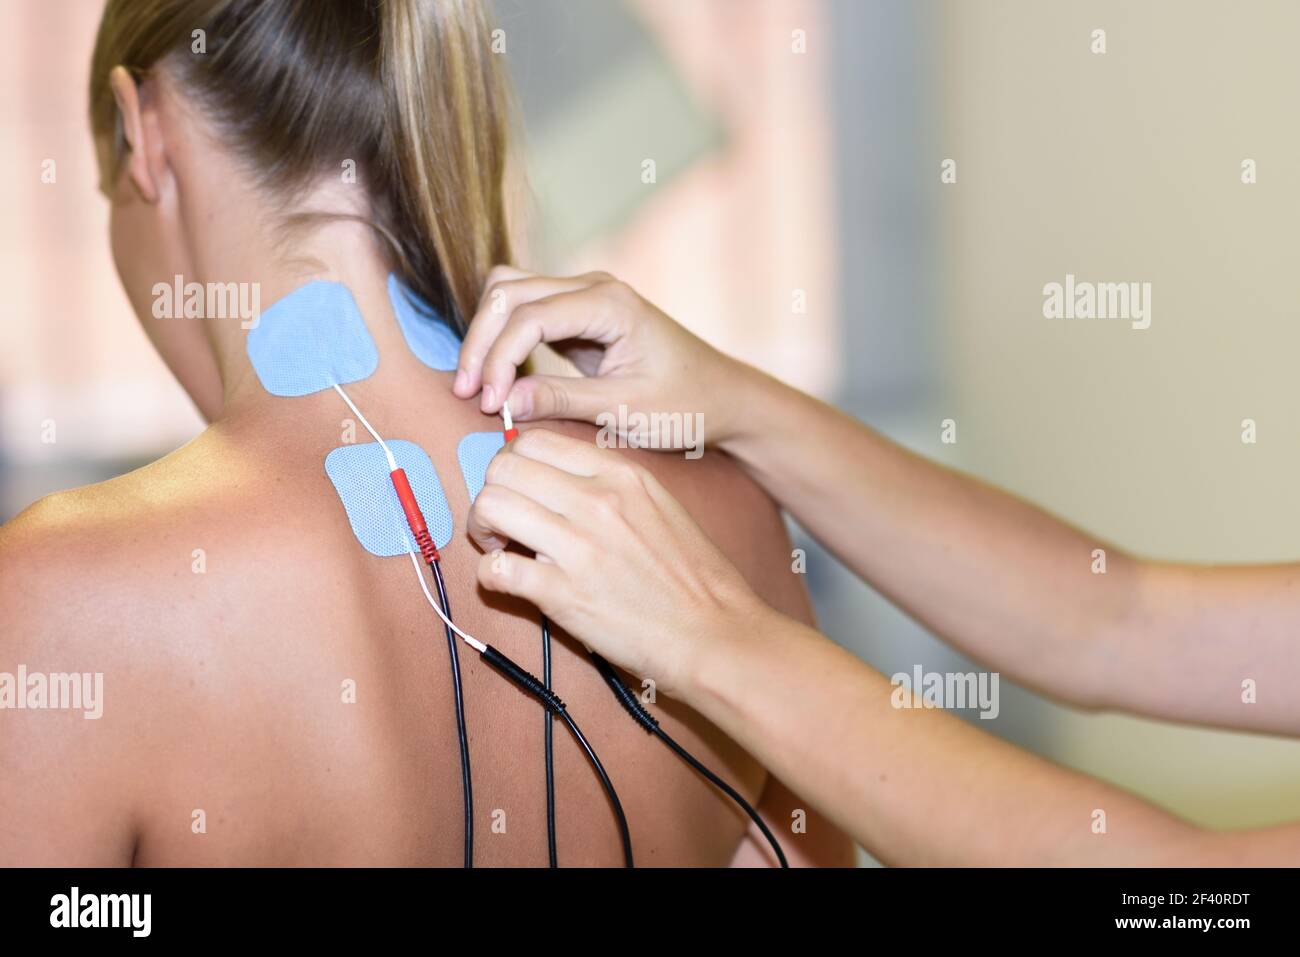 Guía para la colocación de electrodos en fisioterapia - Blog de